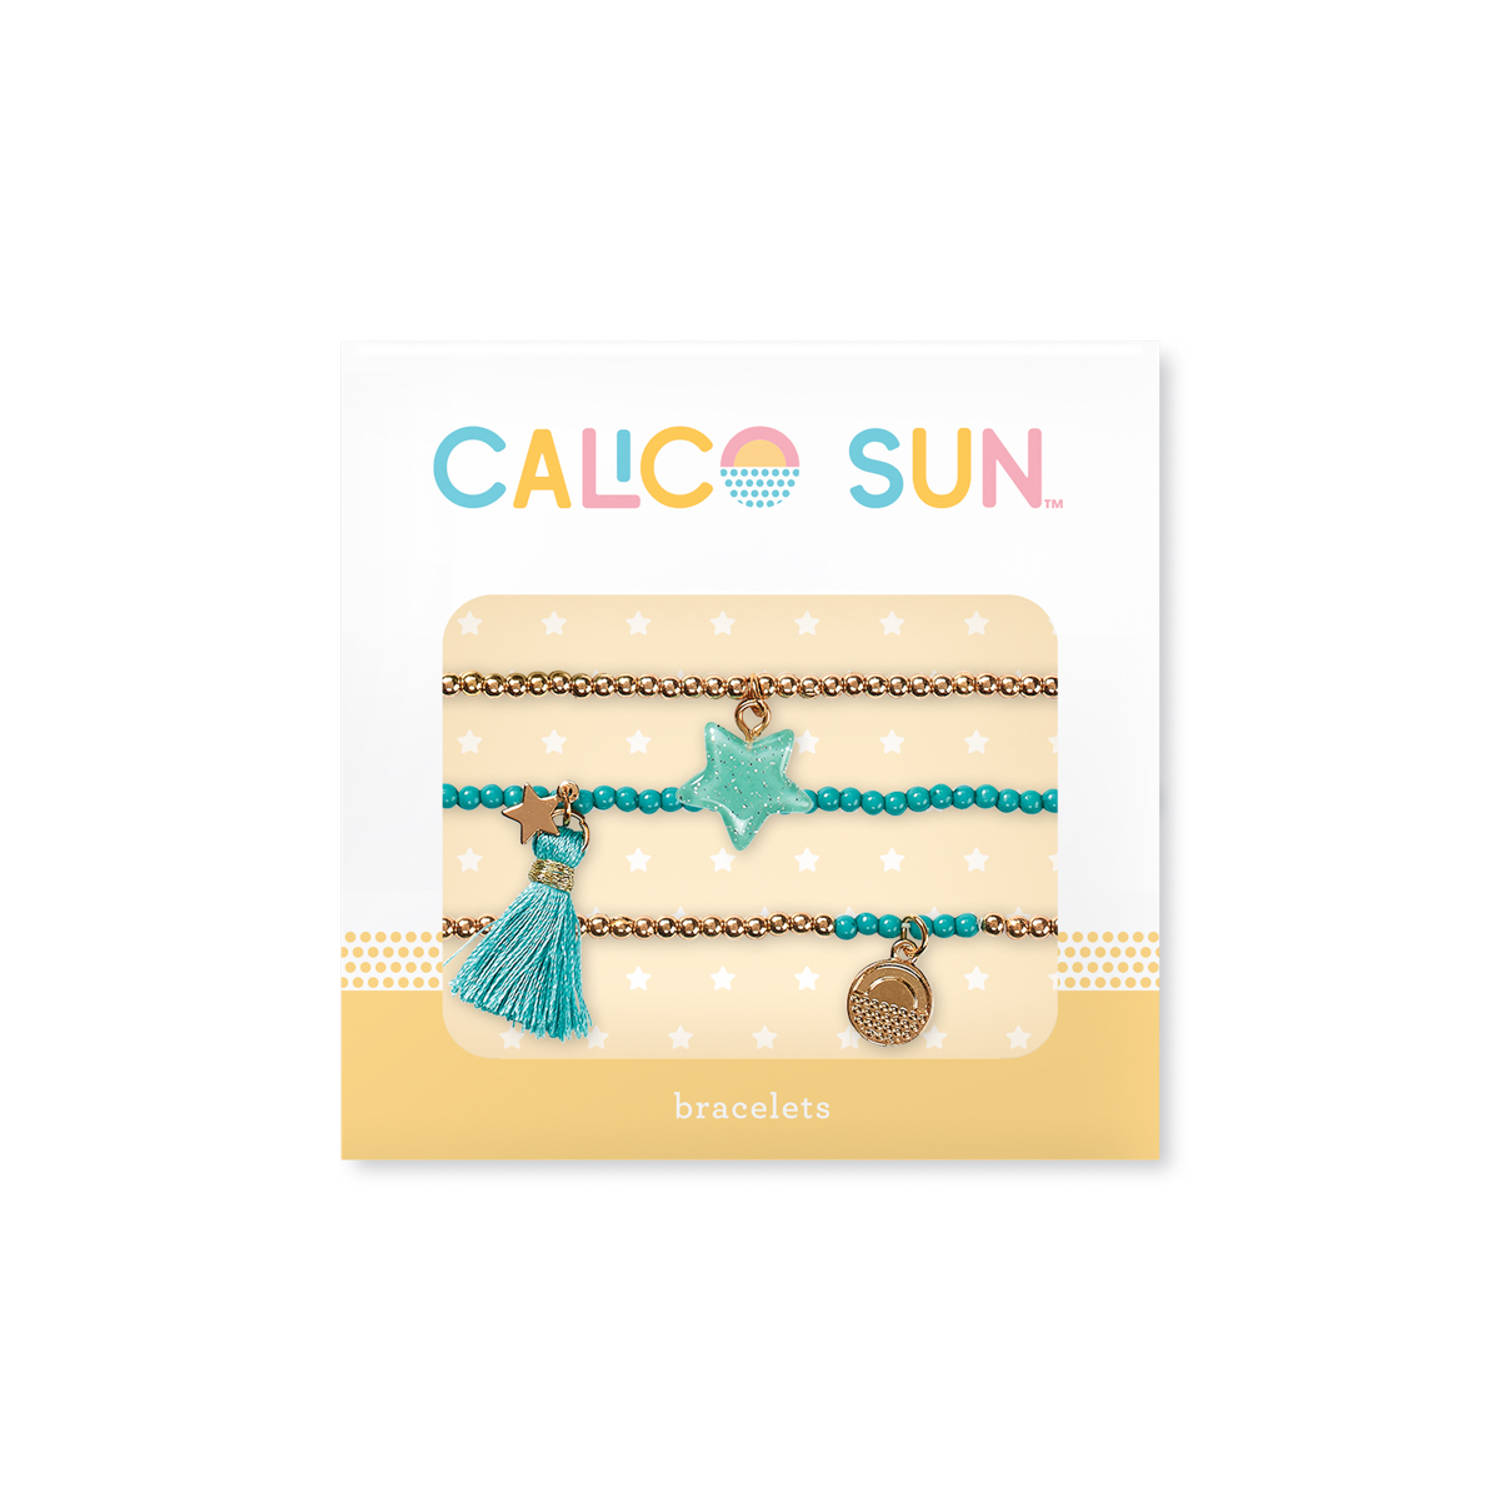 Calico Sun - Sophia Bracelets Star